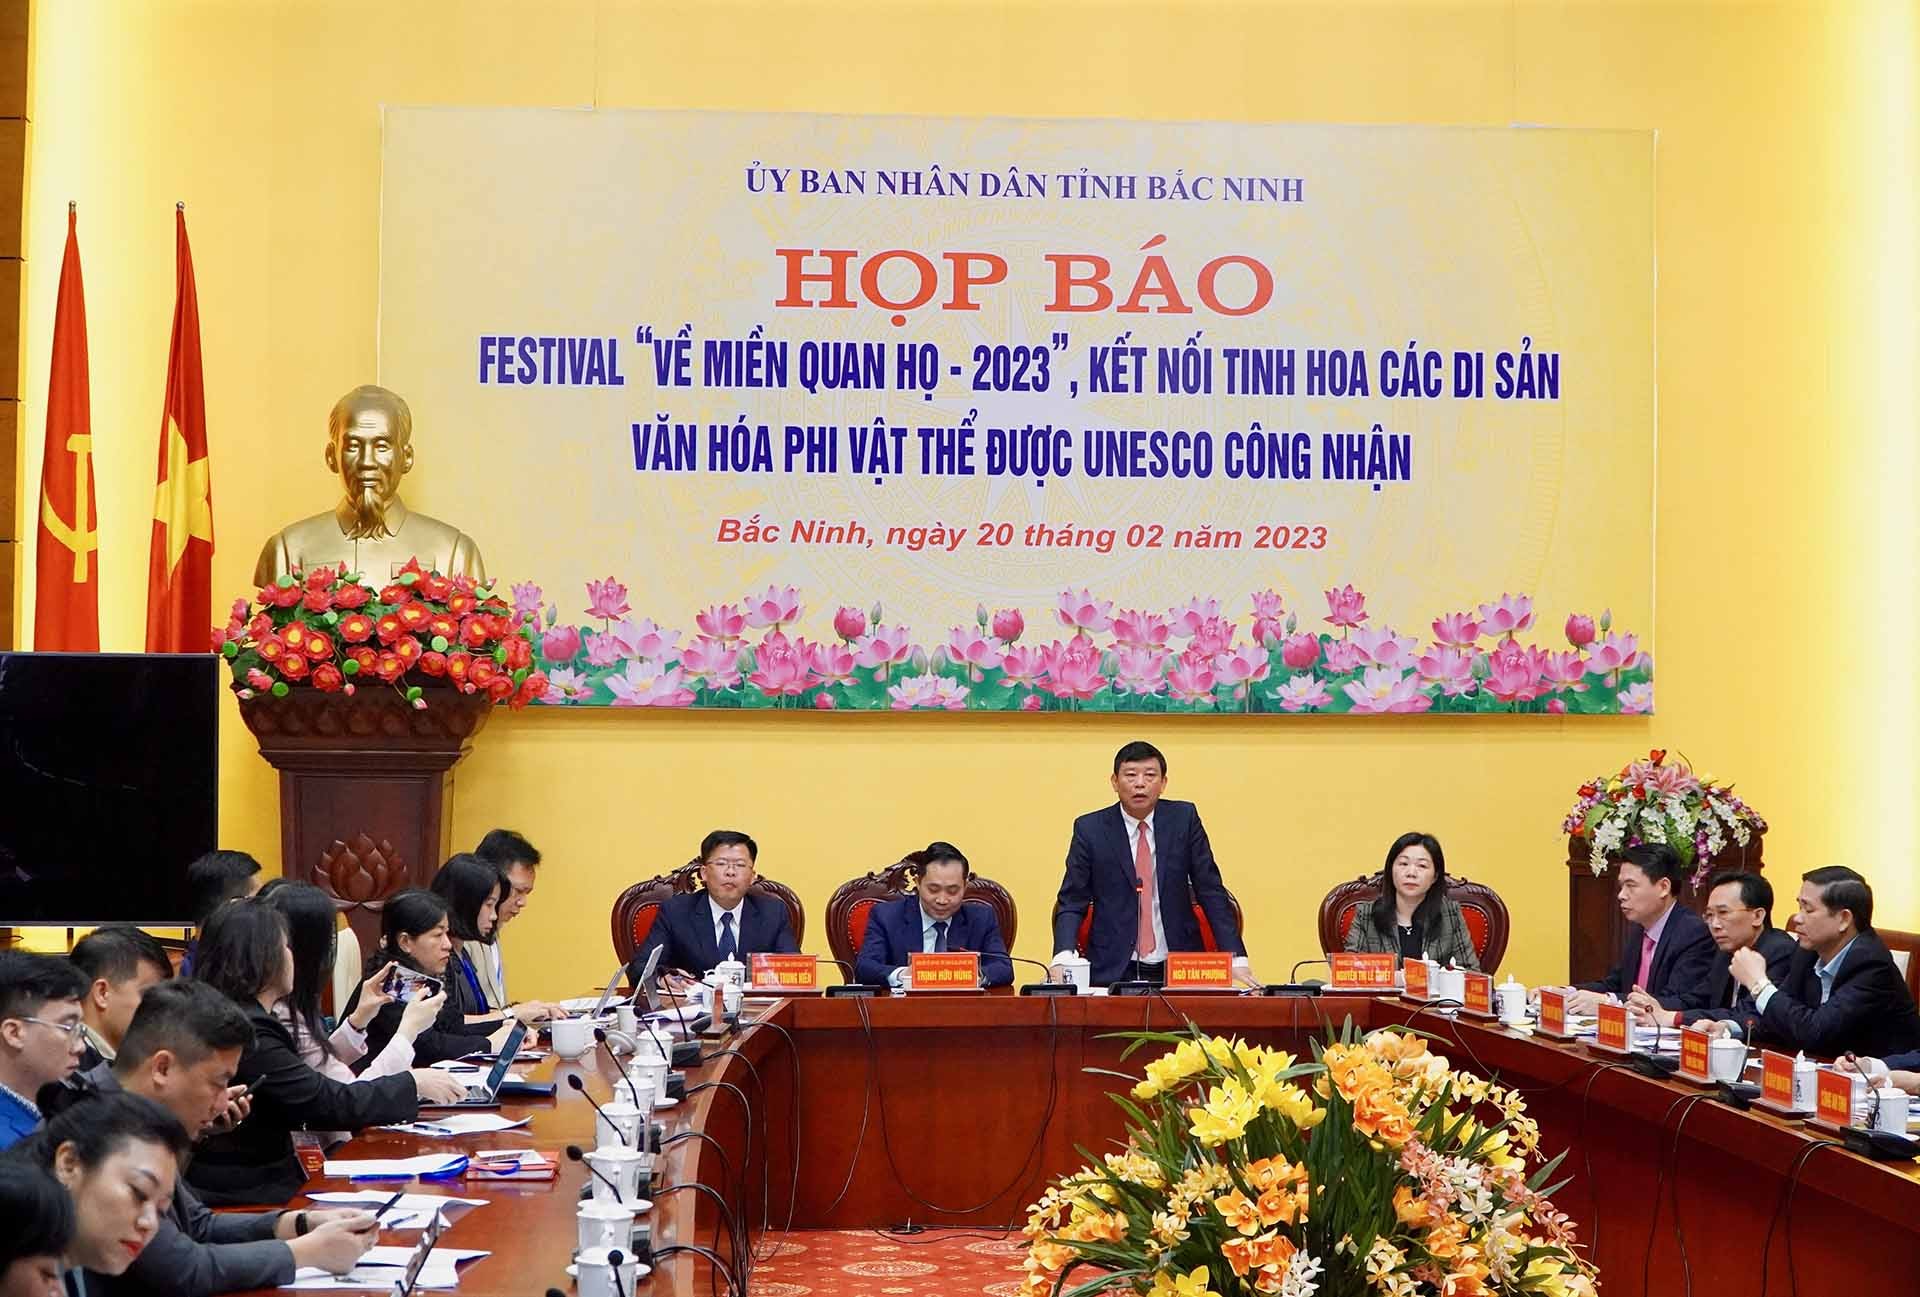 Đồng chí Ngô Tân Phượng- Phó Chủ tịch UBND tỉnh Bắc Ninh phát biểu chỉ đạo họp báo.